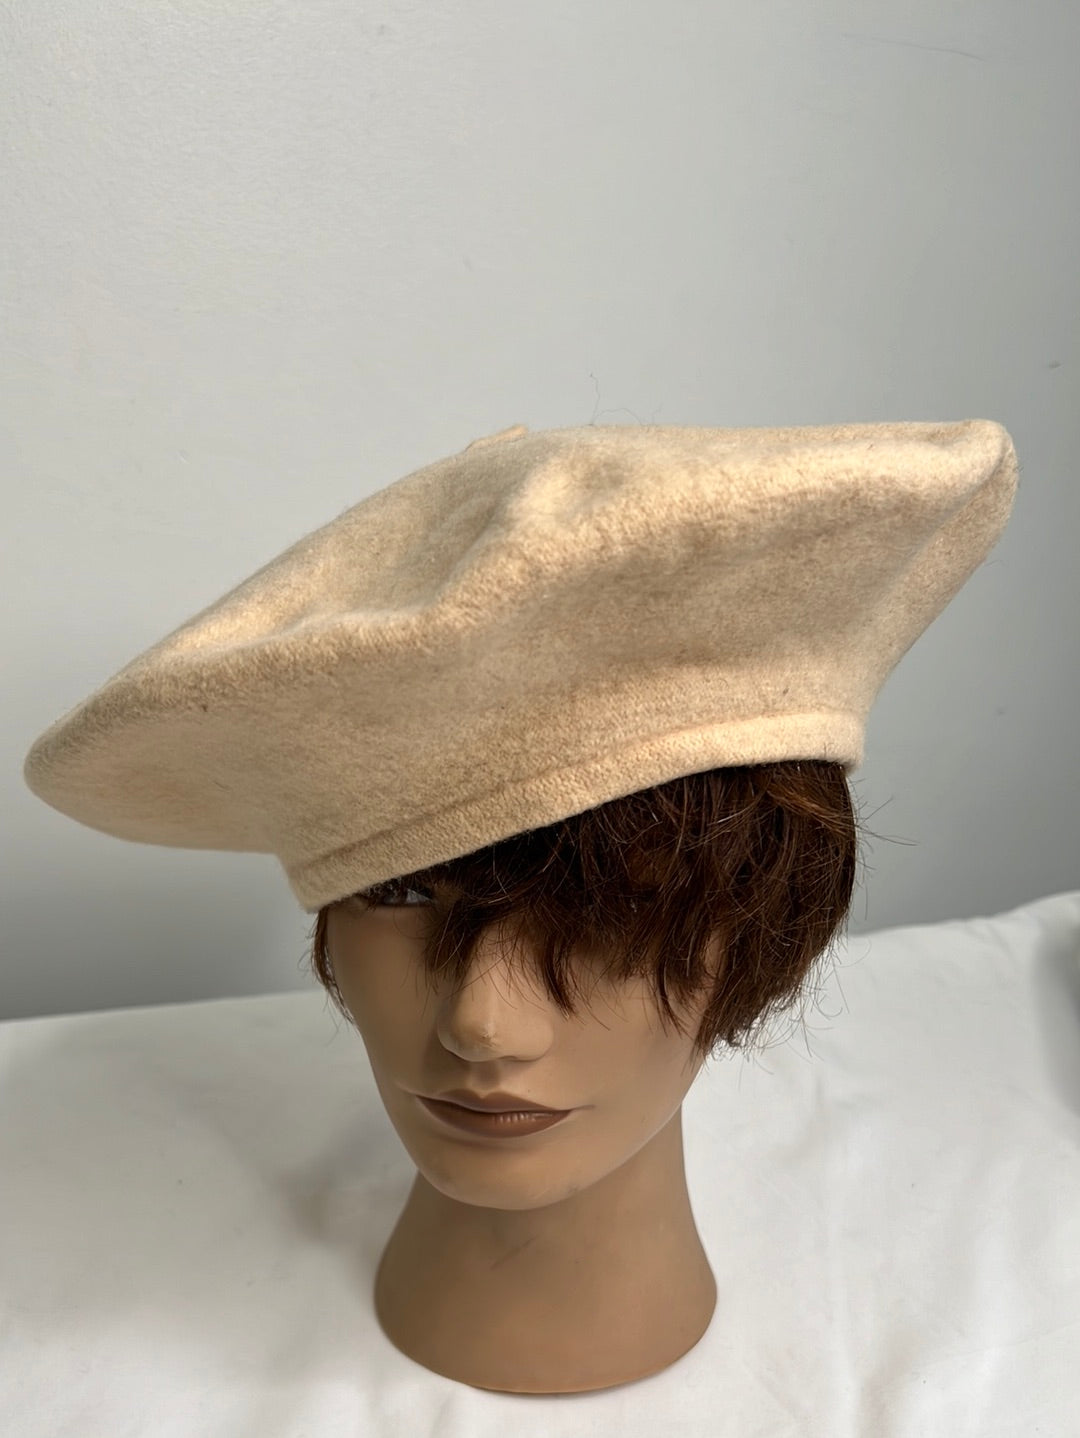 Vintage Beret Hat